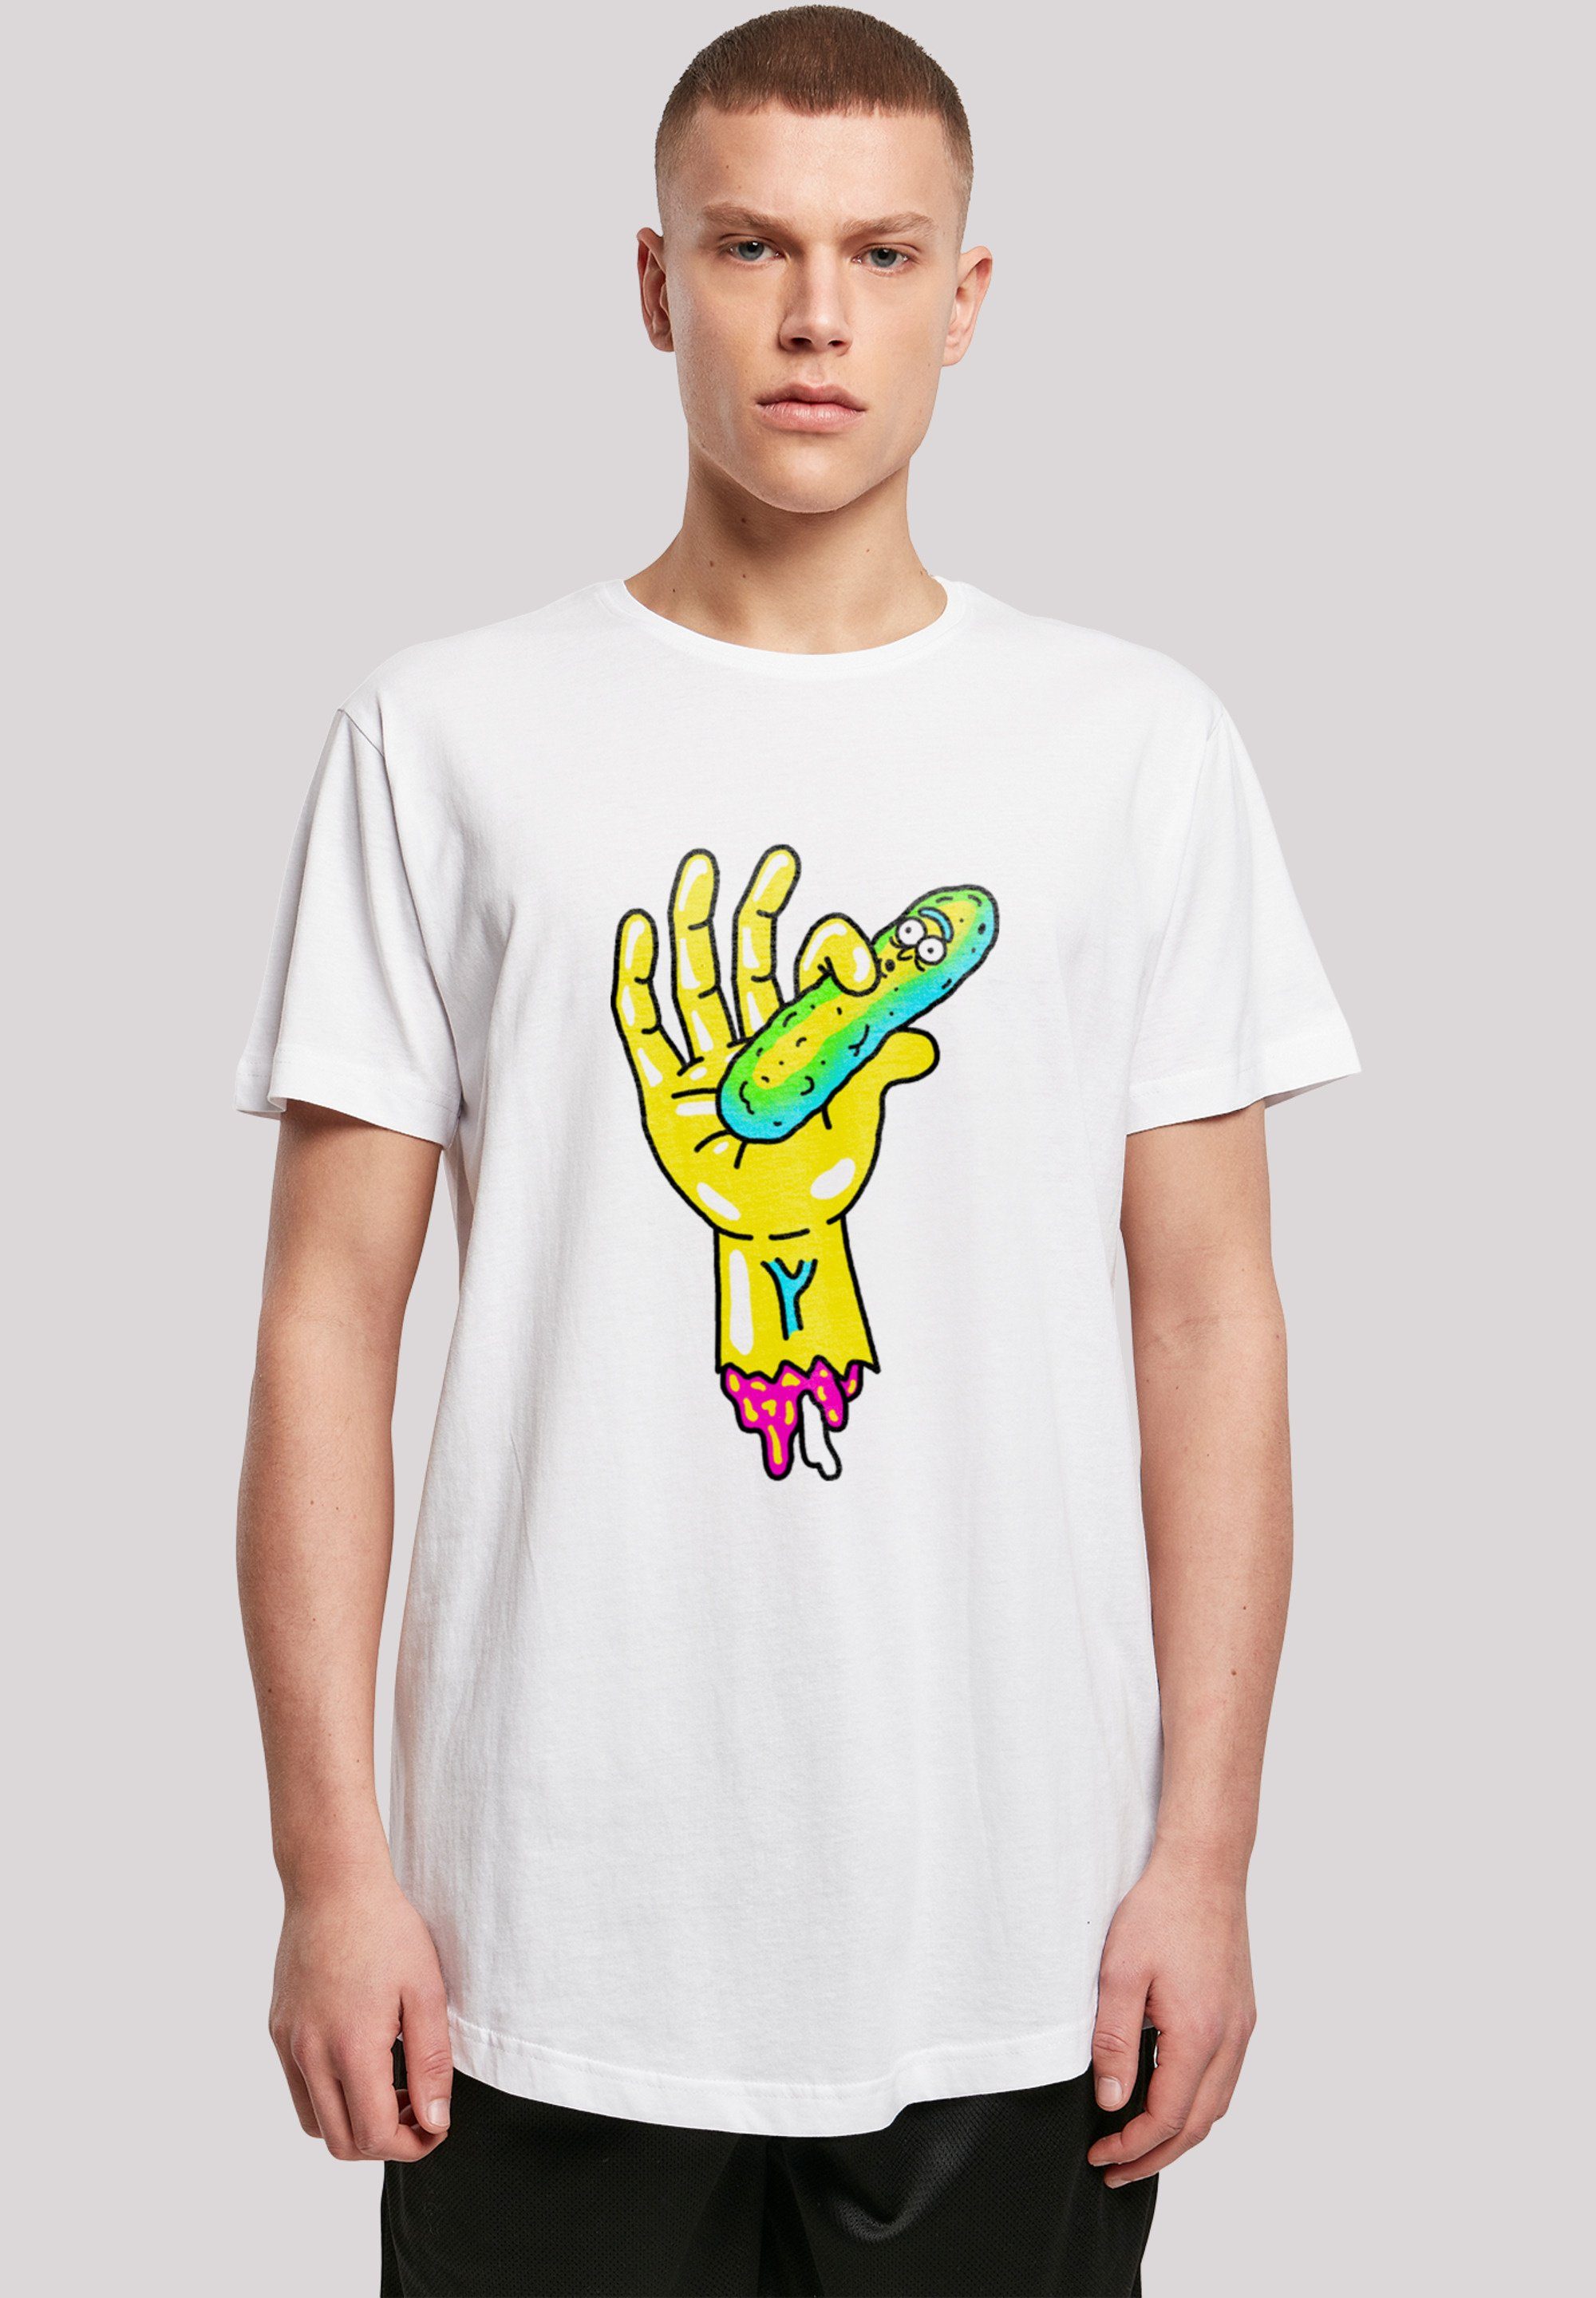 and Morty Pickle weicher Hand hohem mit Baumwollstoff Sehr Tragekomfort F4NT4STIC Rick Print, T-Shirt